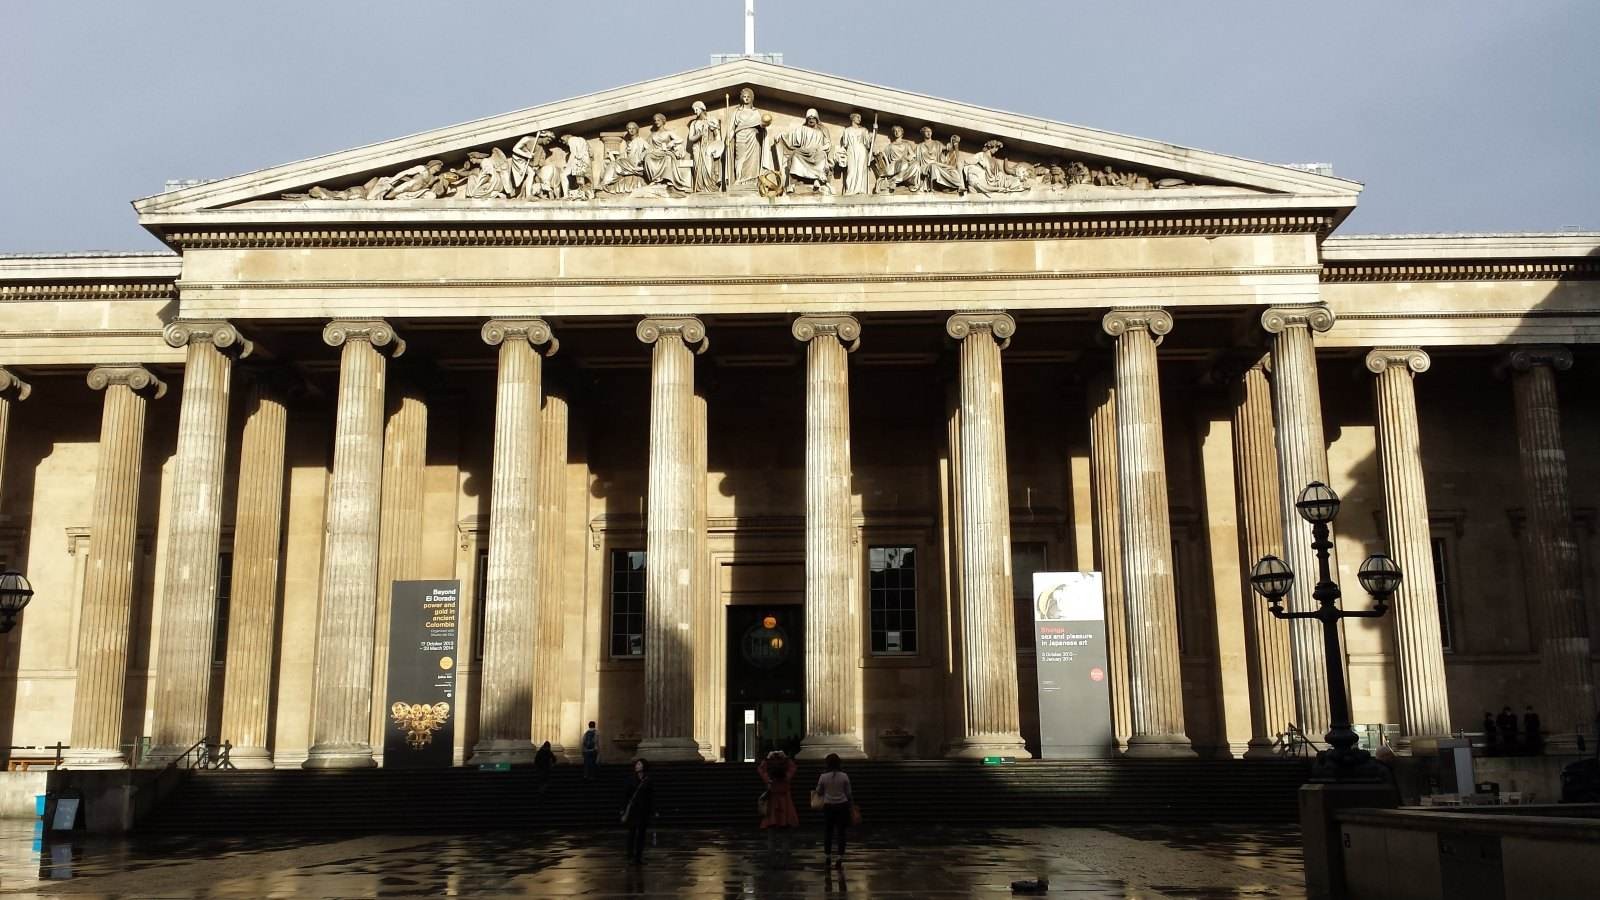 大英博物馆在天猫开店，给全球博物馆带来了什么启示？